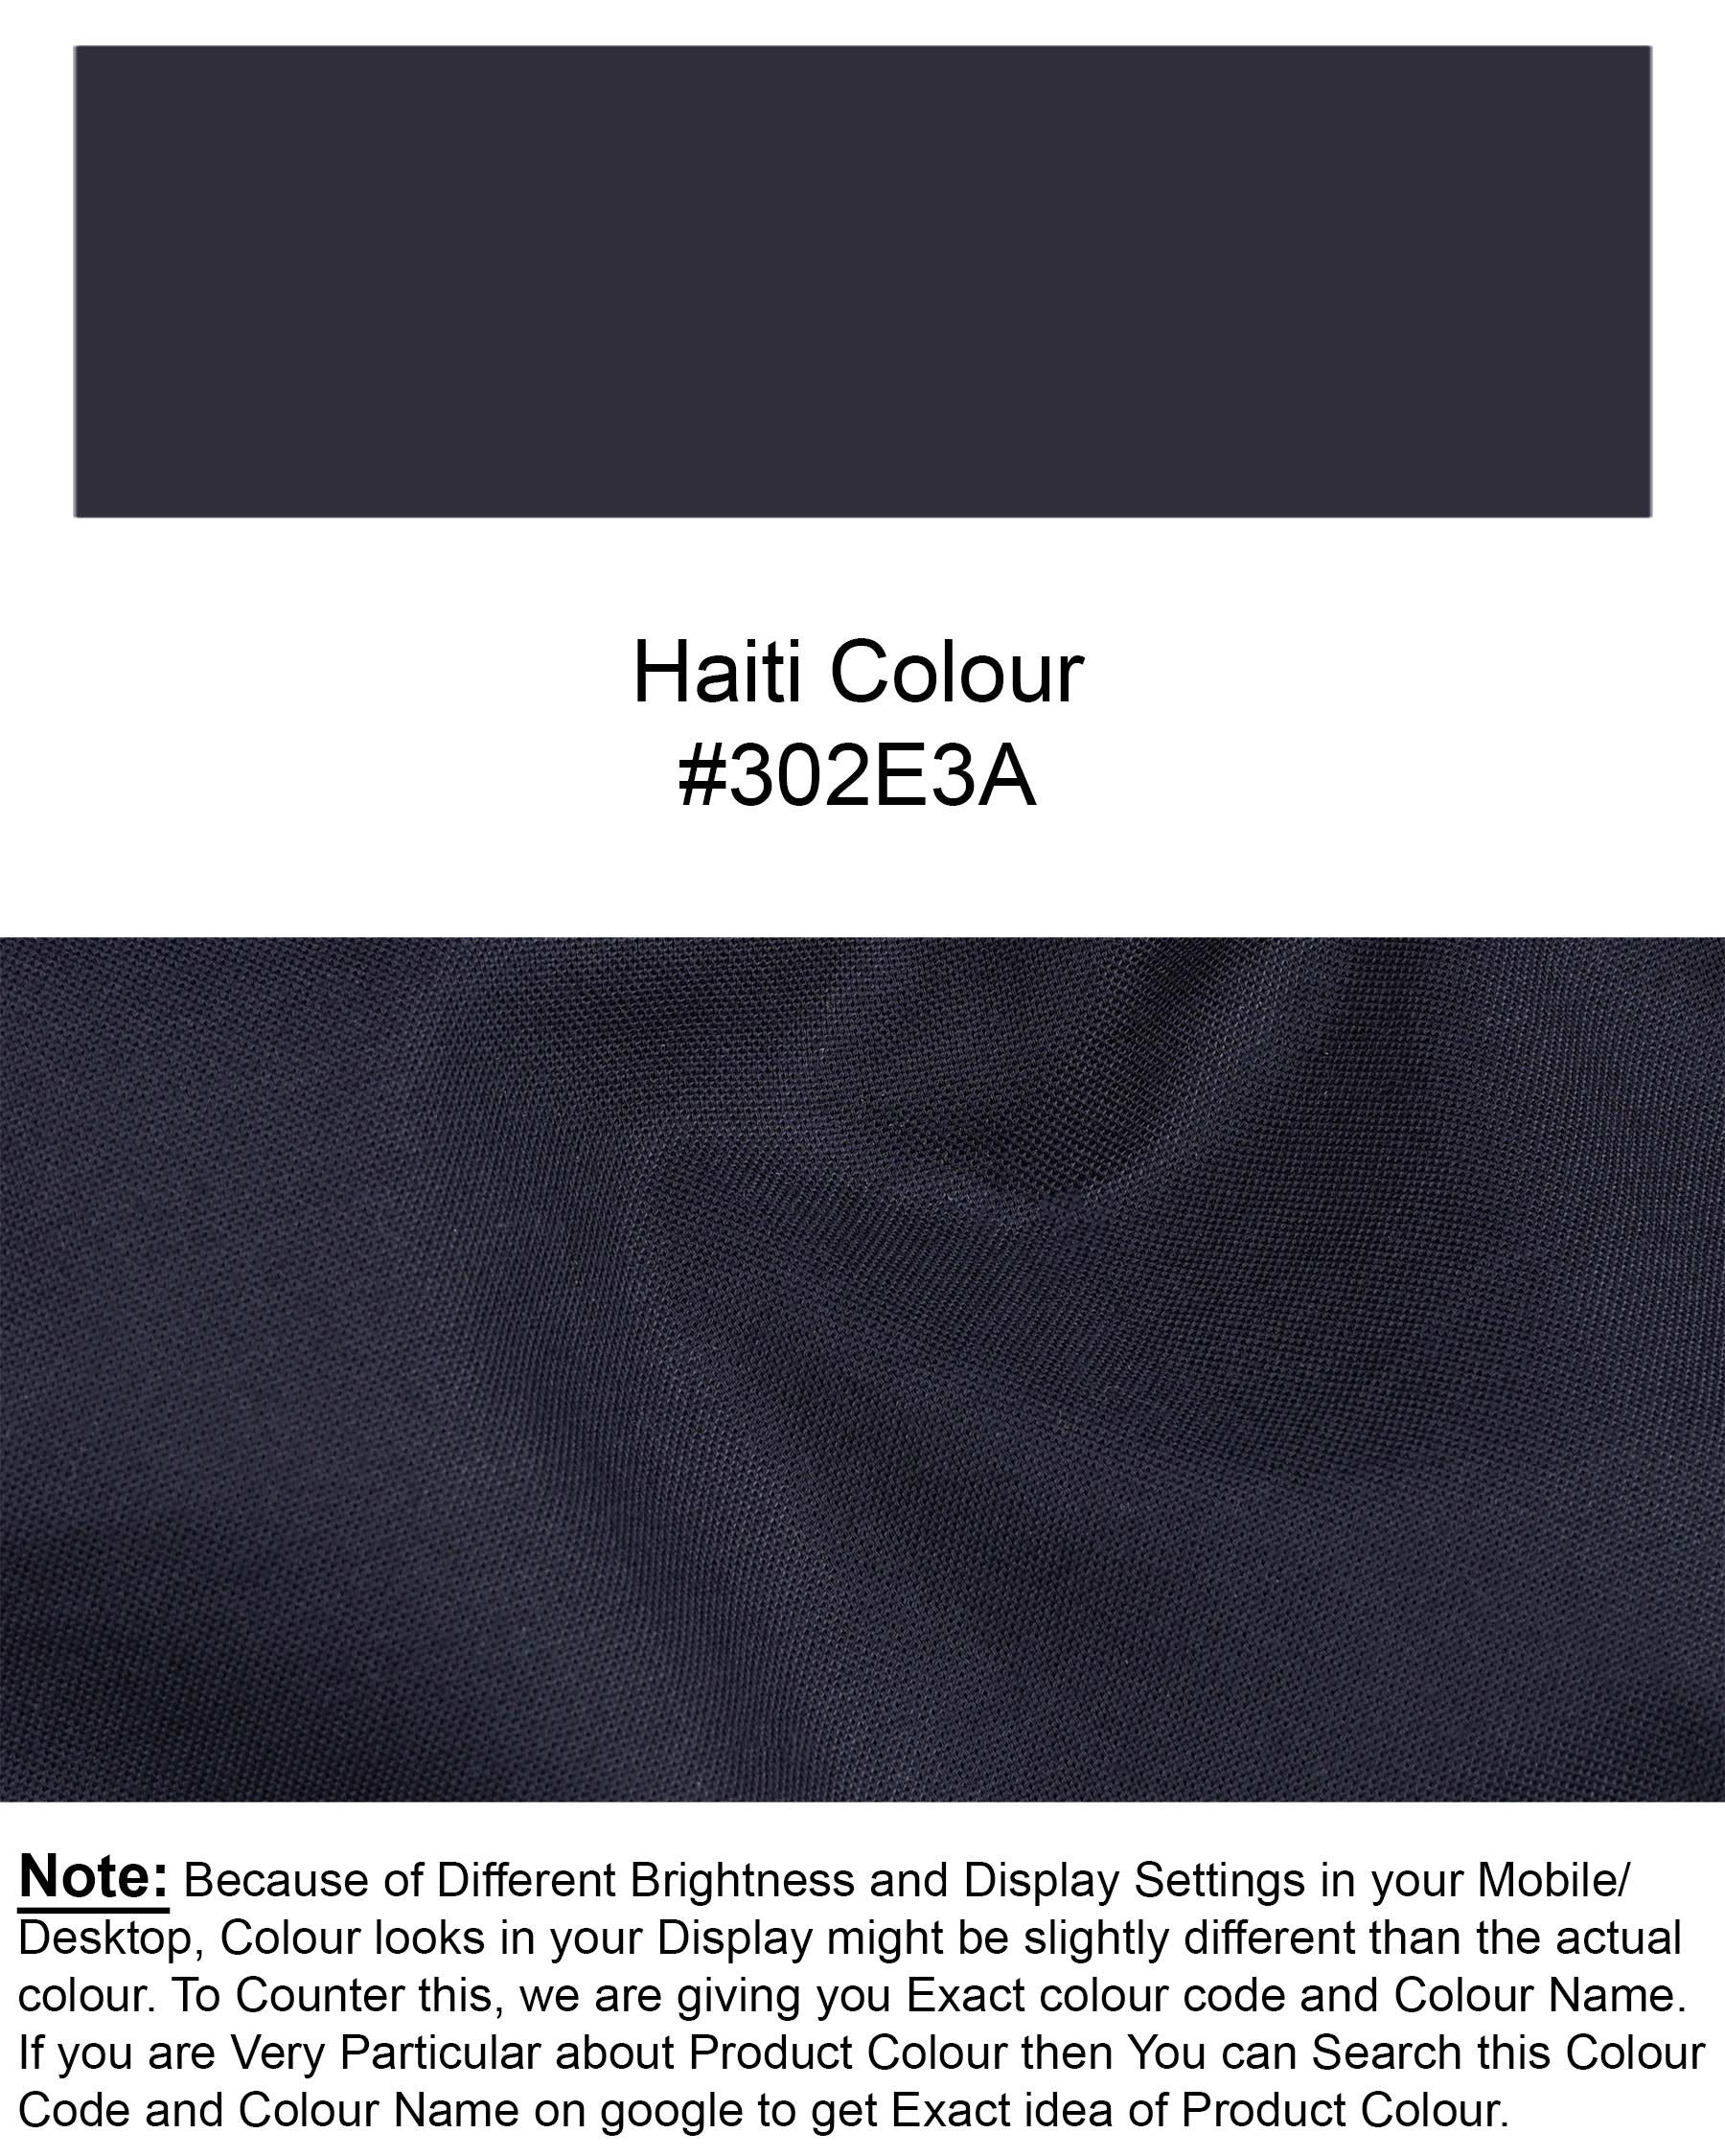 Haiti Blue Royal Oxford Lounge Pant LP185-28, LP185-30, LP185-32, LP185-34, LP185-36, LP185-38, LP185-40, LP185-42, LP185-44